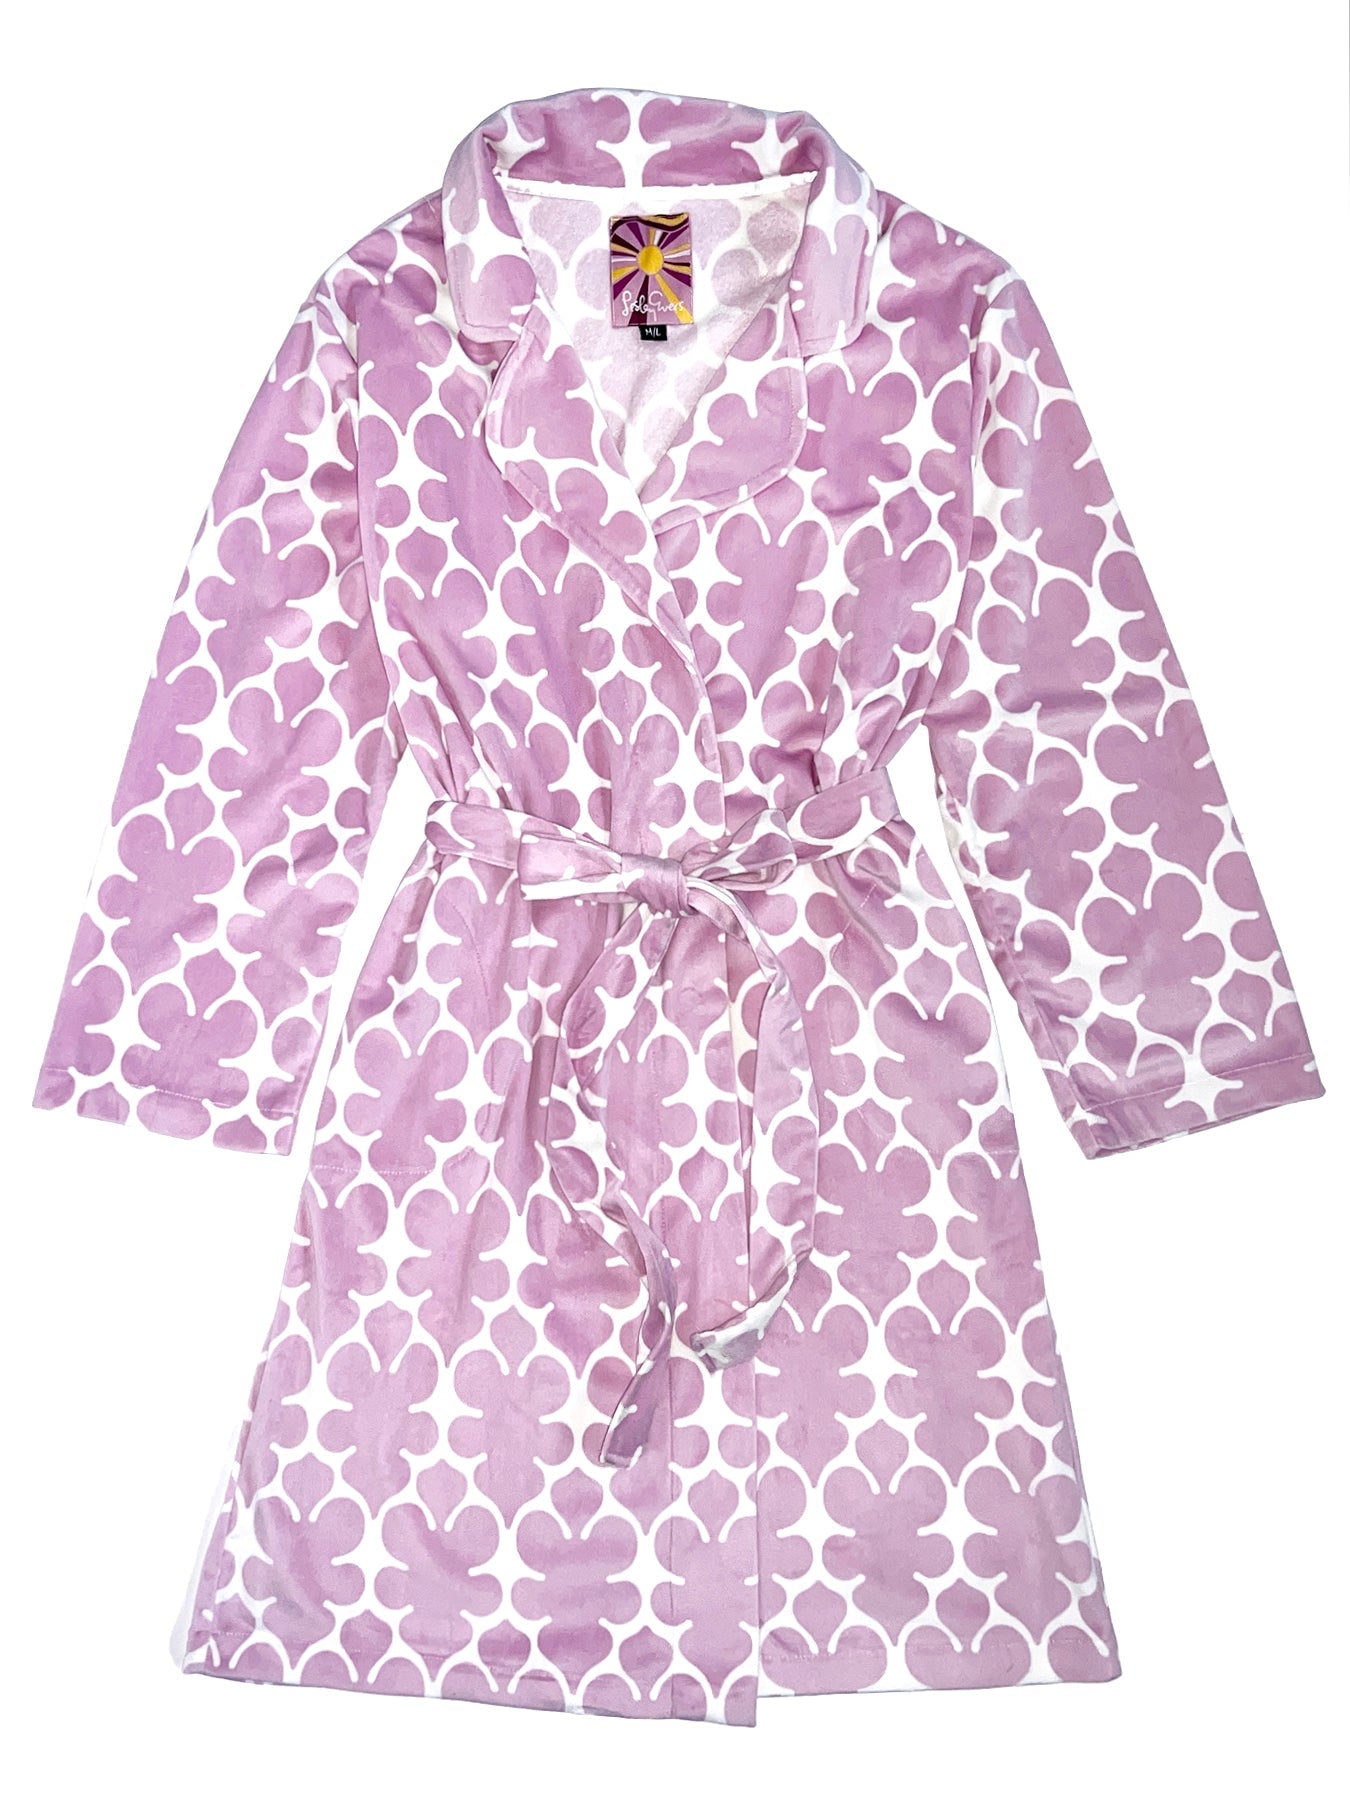 TIFFANY robe Orchid Fleurette - Lesley Evers-23-HG200-W3-bath-bath robe